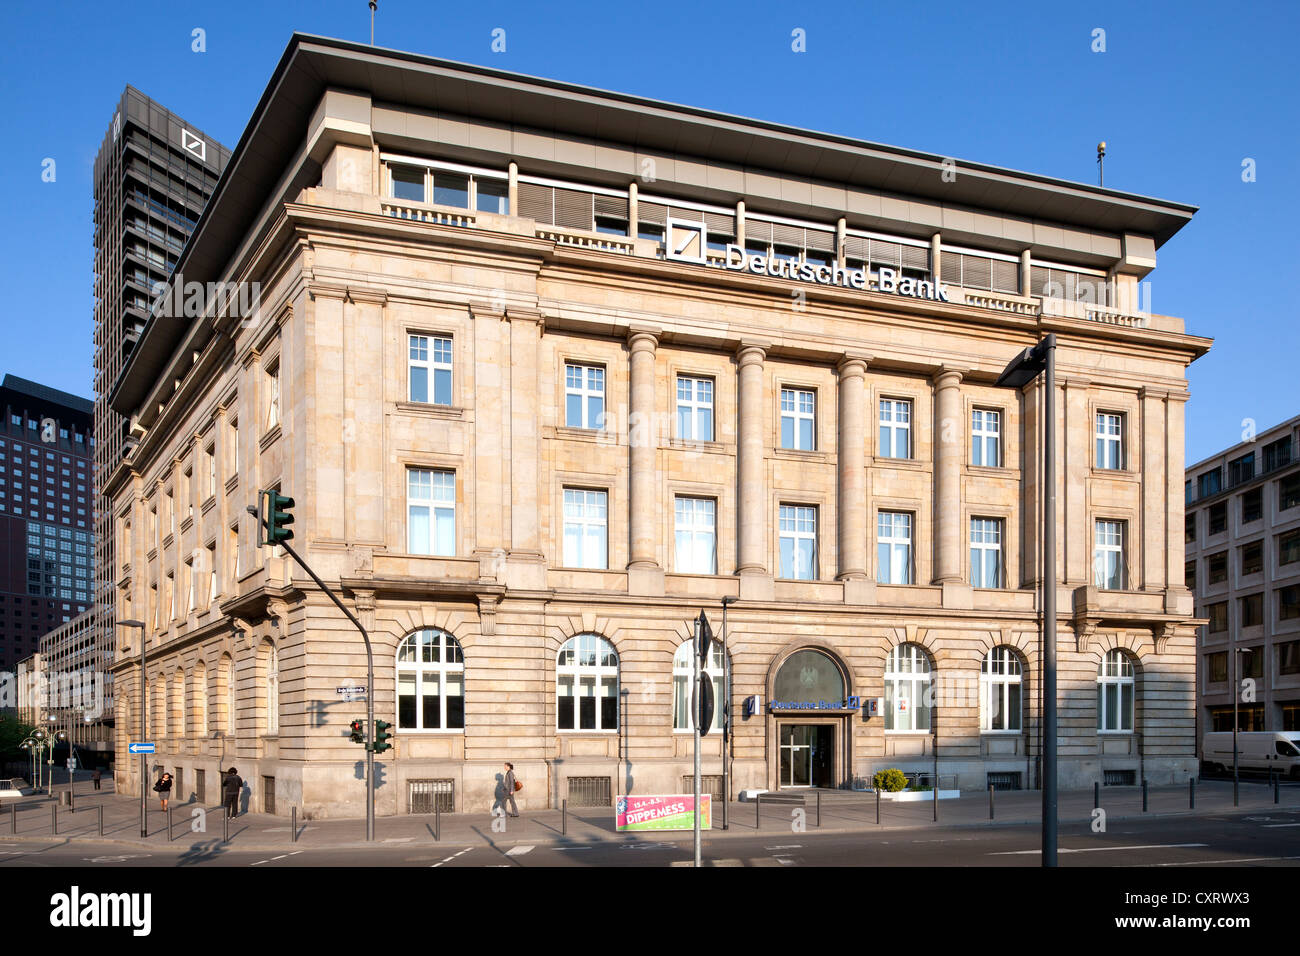 Immeuble de bureaux sur place Rossmarkt, Frankfurt am Main, Hesse, Germany, Europe, PublicGround Banque D'Images